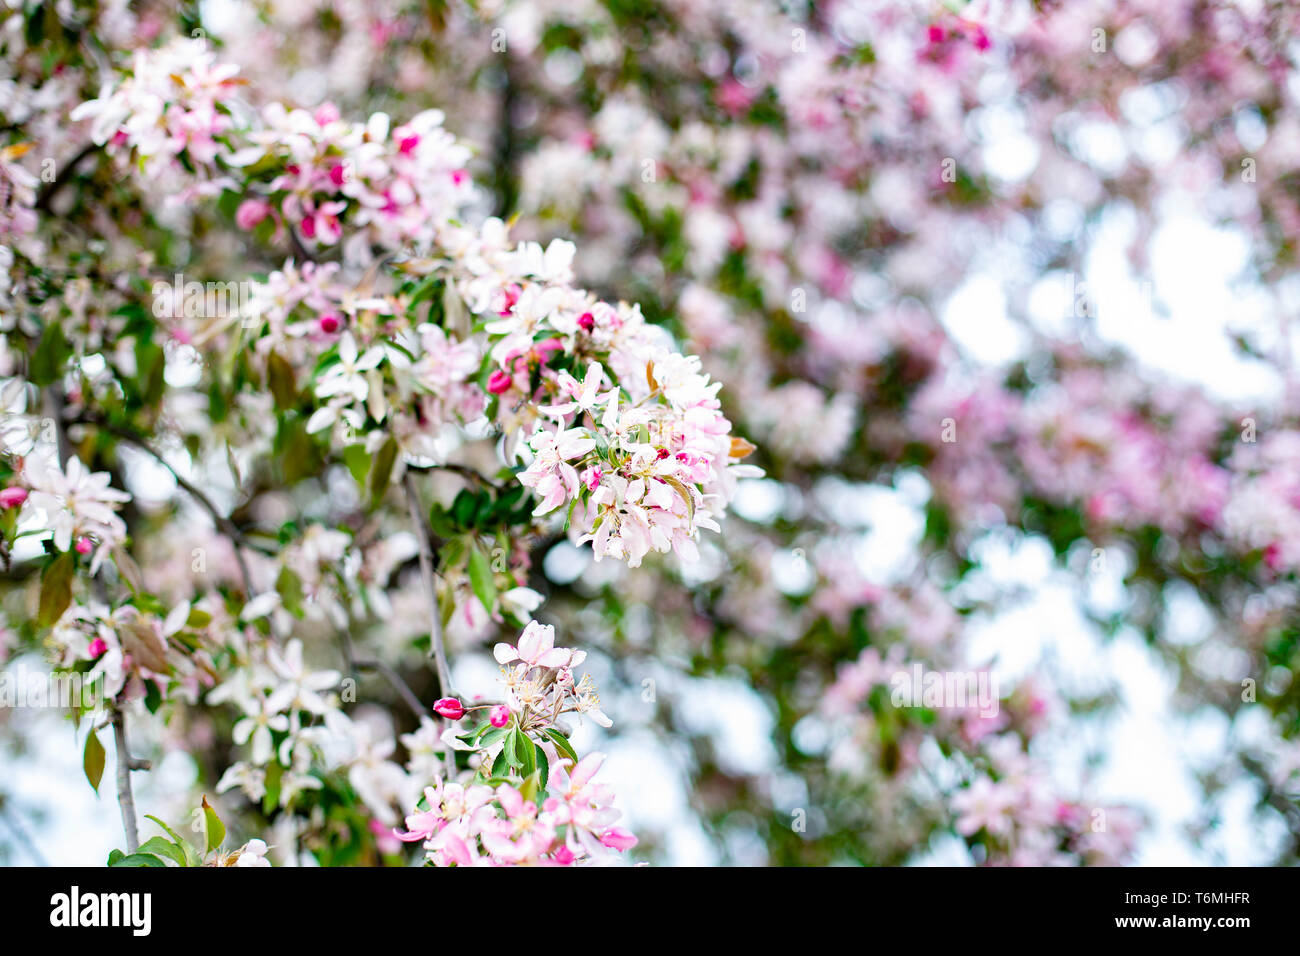 Rosa und weissen sakura Blumen blühen japanische kirsche baum Frühjahrsblüte Hintergrund Tageslicht Fotografie Stockfoto